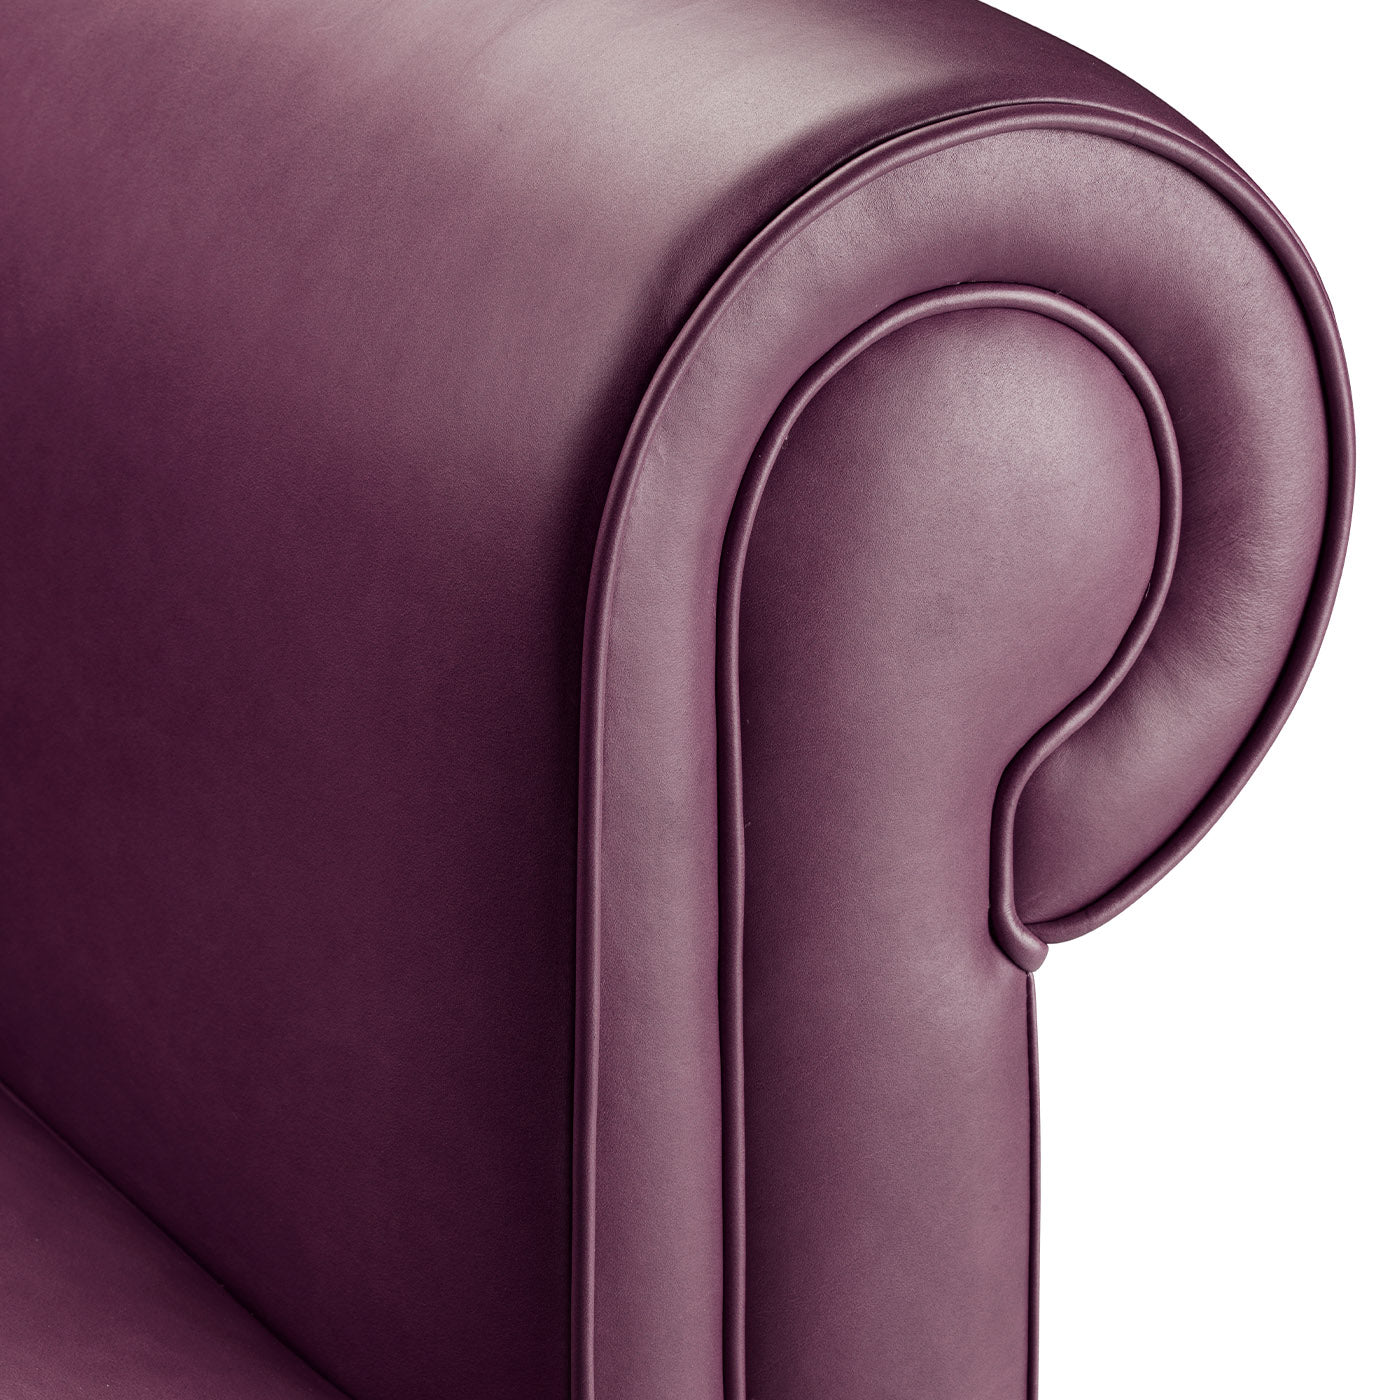 Portofino 2-Seater Purple Sofa by Stefano Giovannoni - Alternative view 1